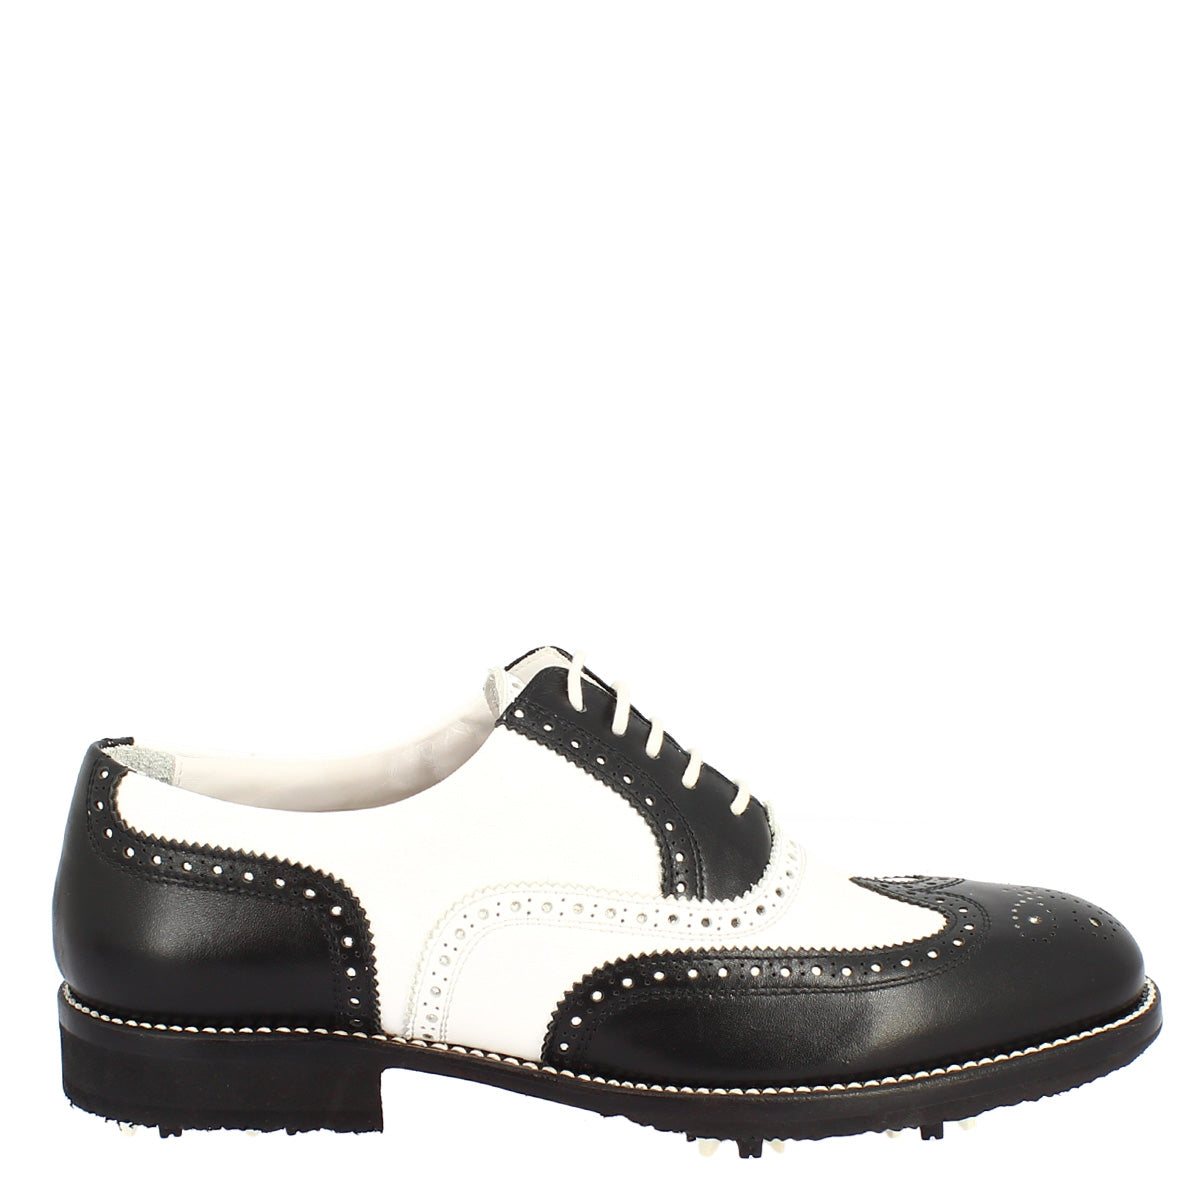 Chaussures de golf en cuir bicolore noir/blanc fabriquées à la main